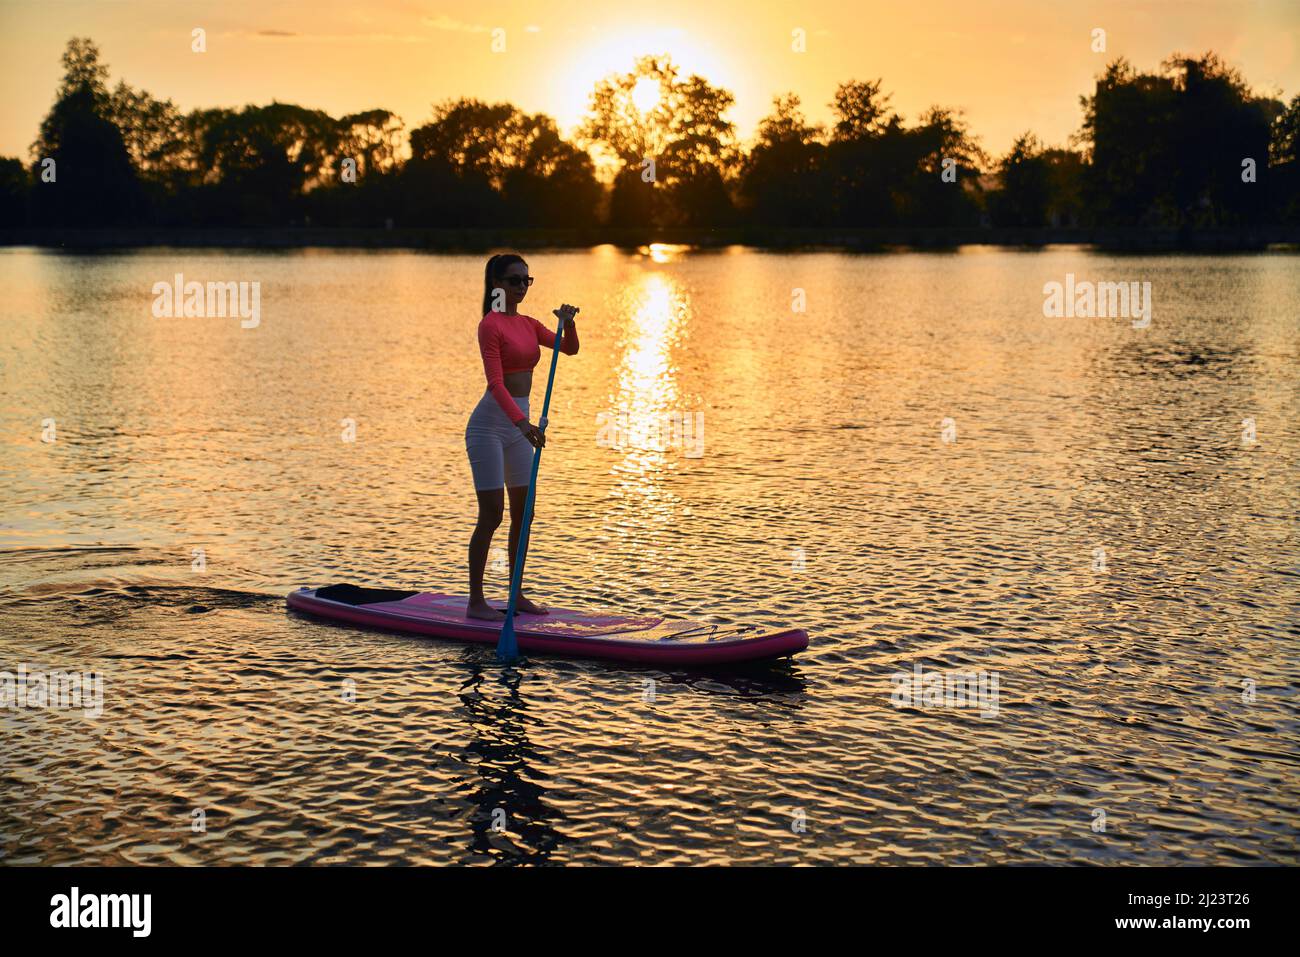 Gesunde starke Frau im Sportoutfit Surfen auf dem Paddle Board während des Sommeruntergangs über dem See. Junge kaukasische Brünette verbringt abends Zeit für Aktivitäten im Freien. Stockfoto